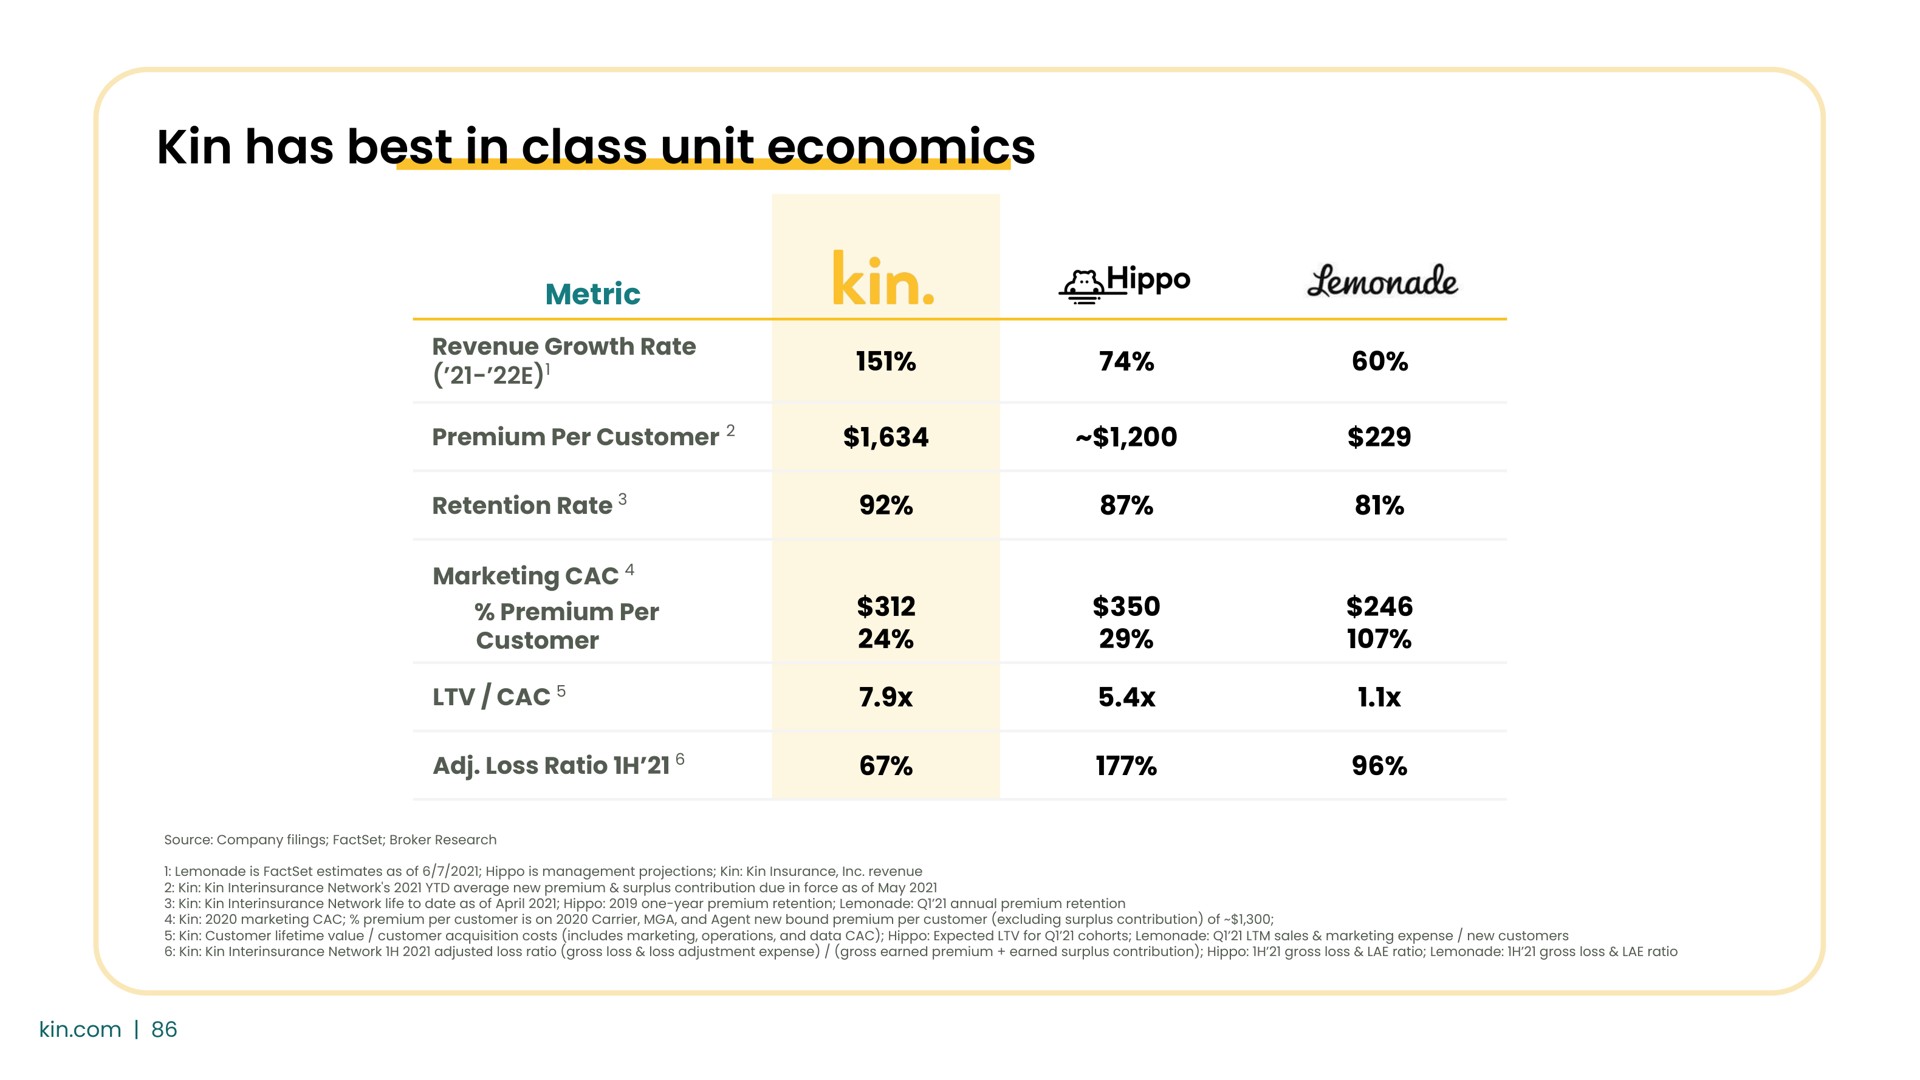 kin has best in class unit economics | Kin